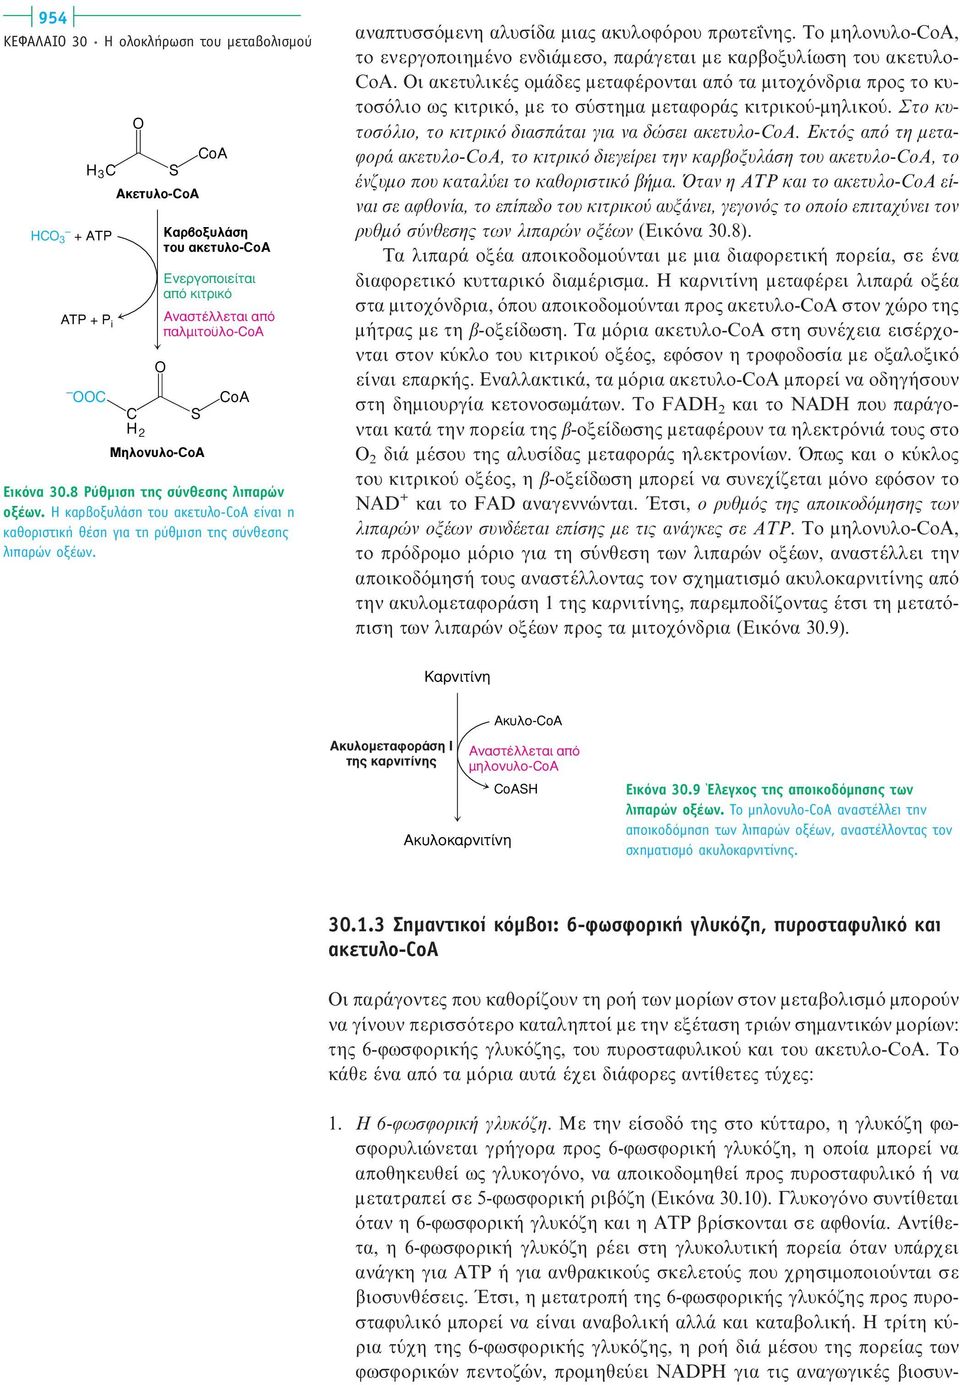 αναπτυσσόμενη αλυσίδα μιας ακυλοφόρου πρωτεΐνης. Tο μηλονυλο-coa, το ενεργοποιημένο ενδιάμεσο, παράγεται με καρβοξυλίωση του ακετυλο- CoA.